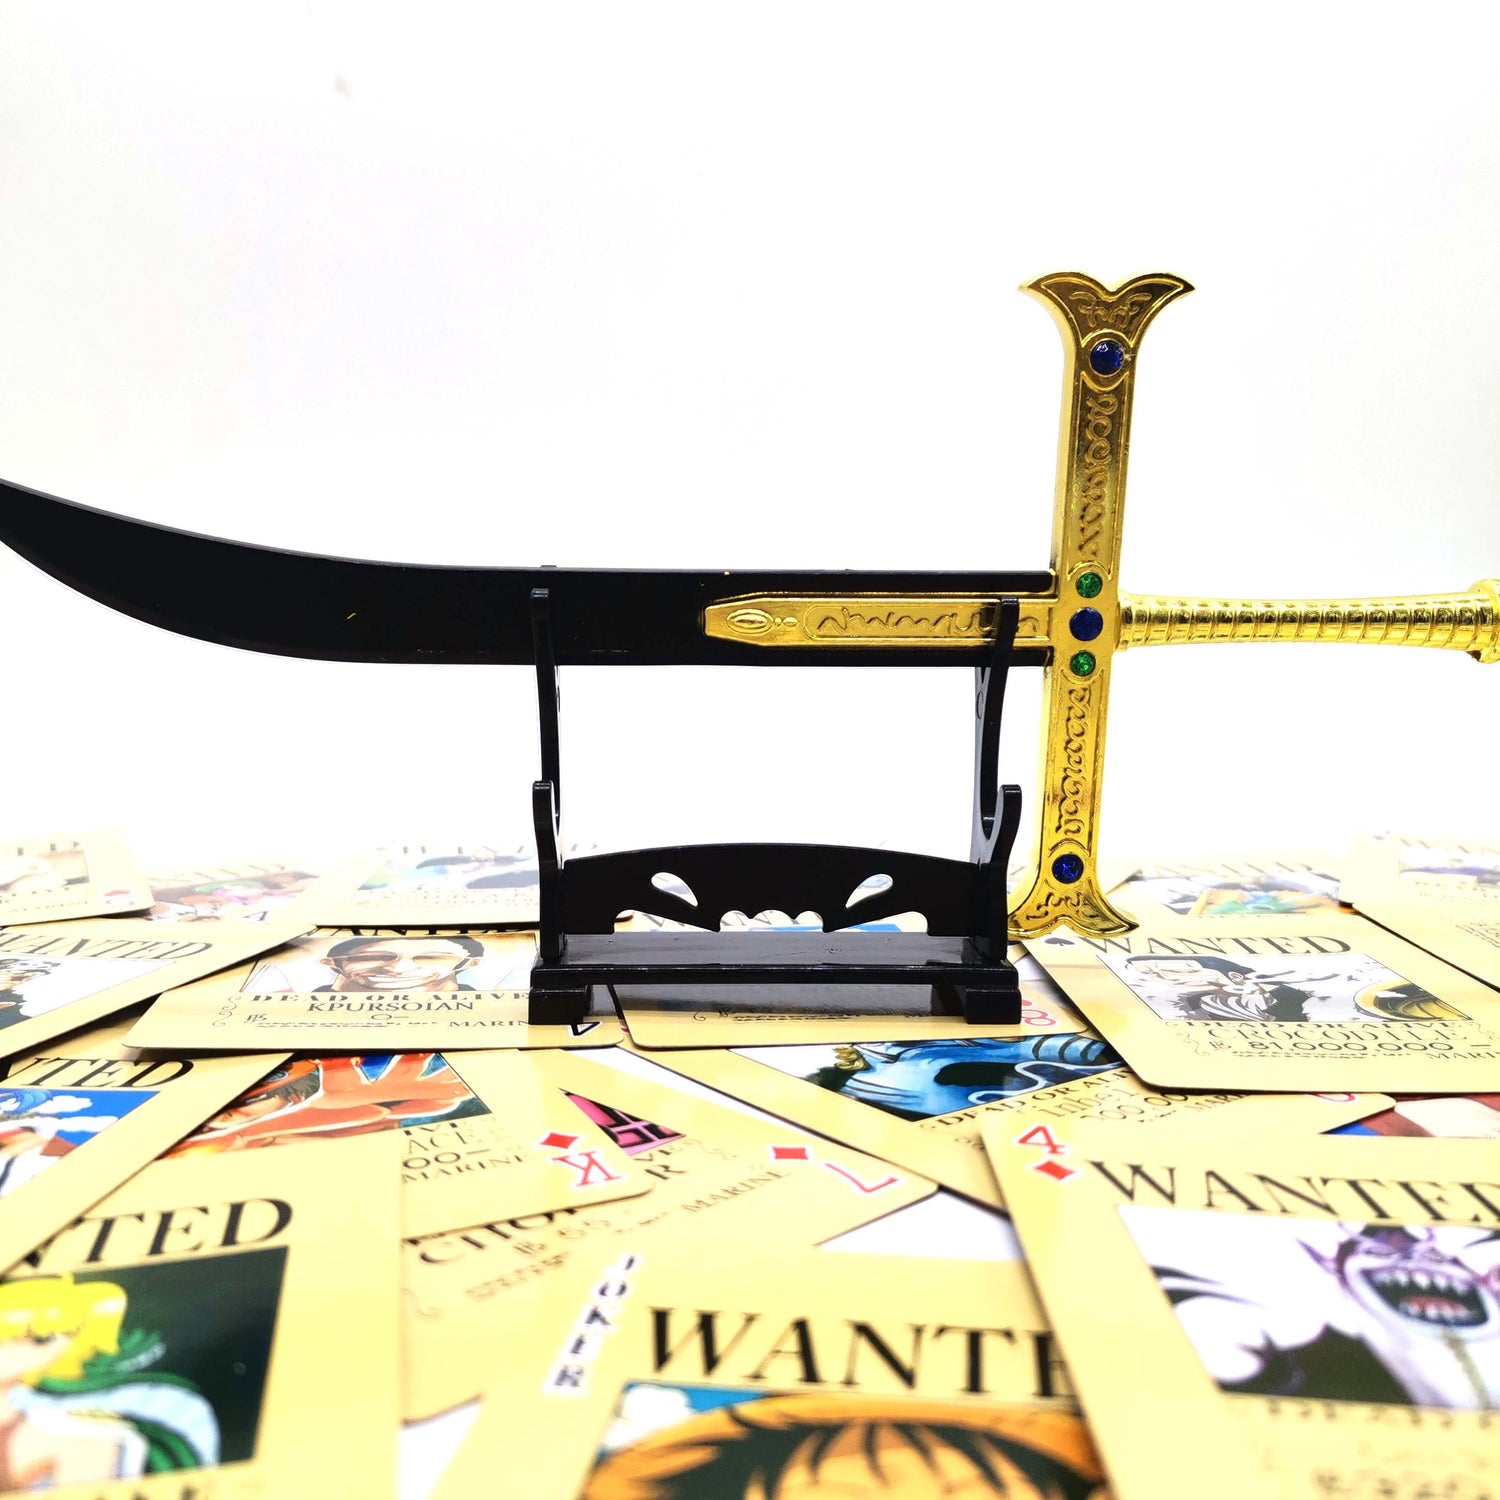 Metal Blade Display Model, Dracule Mihawk Sword, Metal Pirate Sword